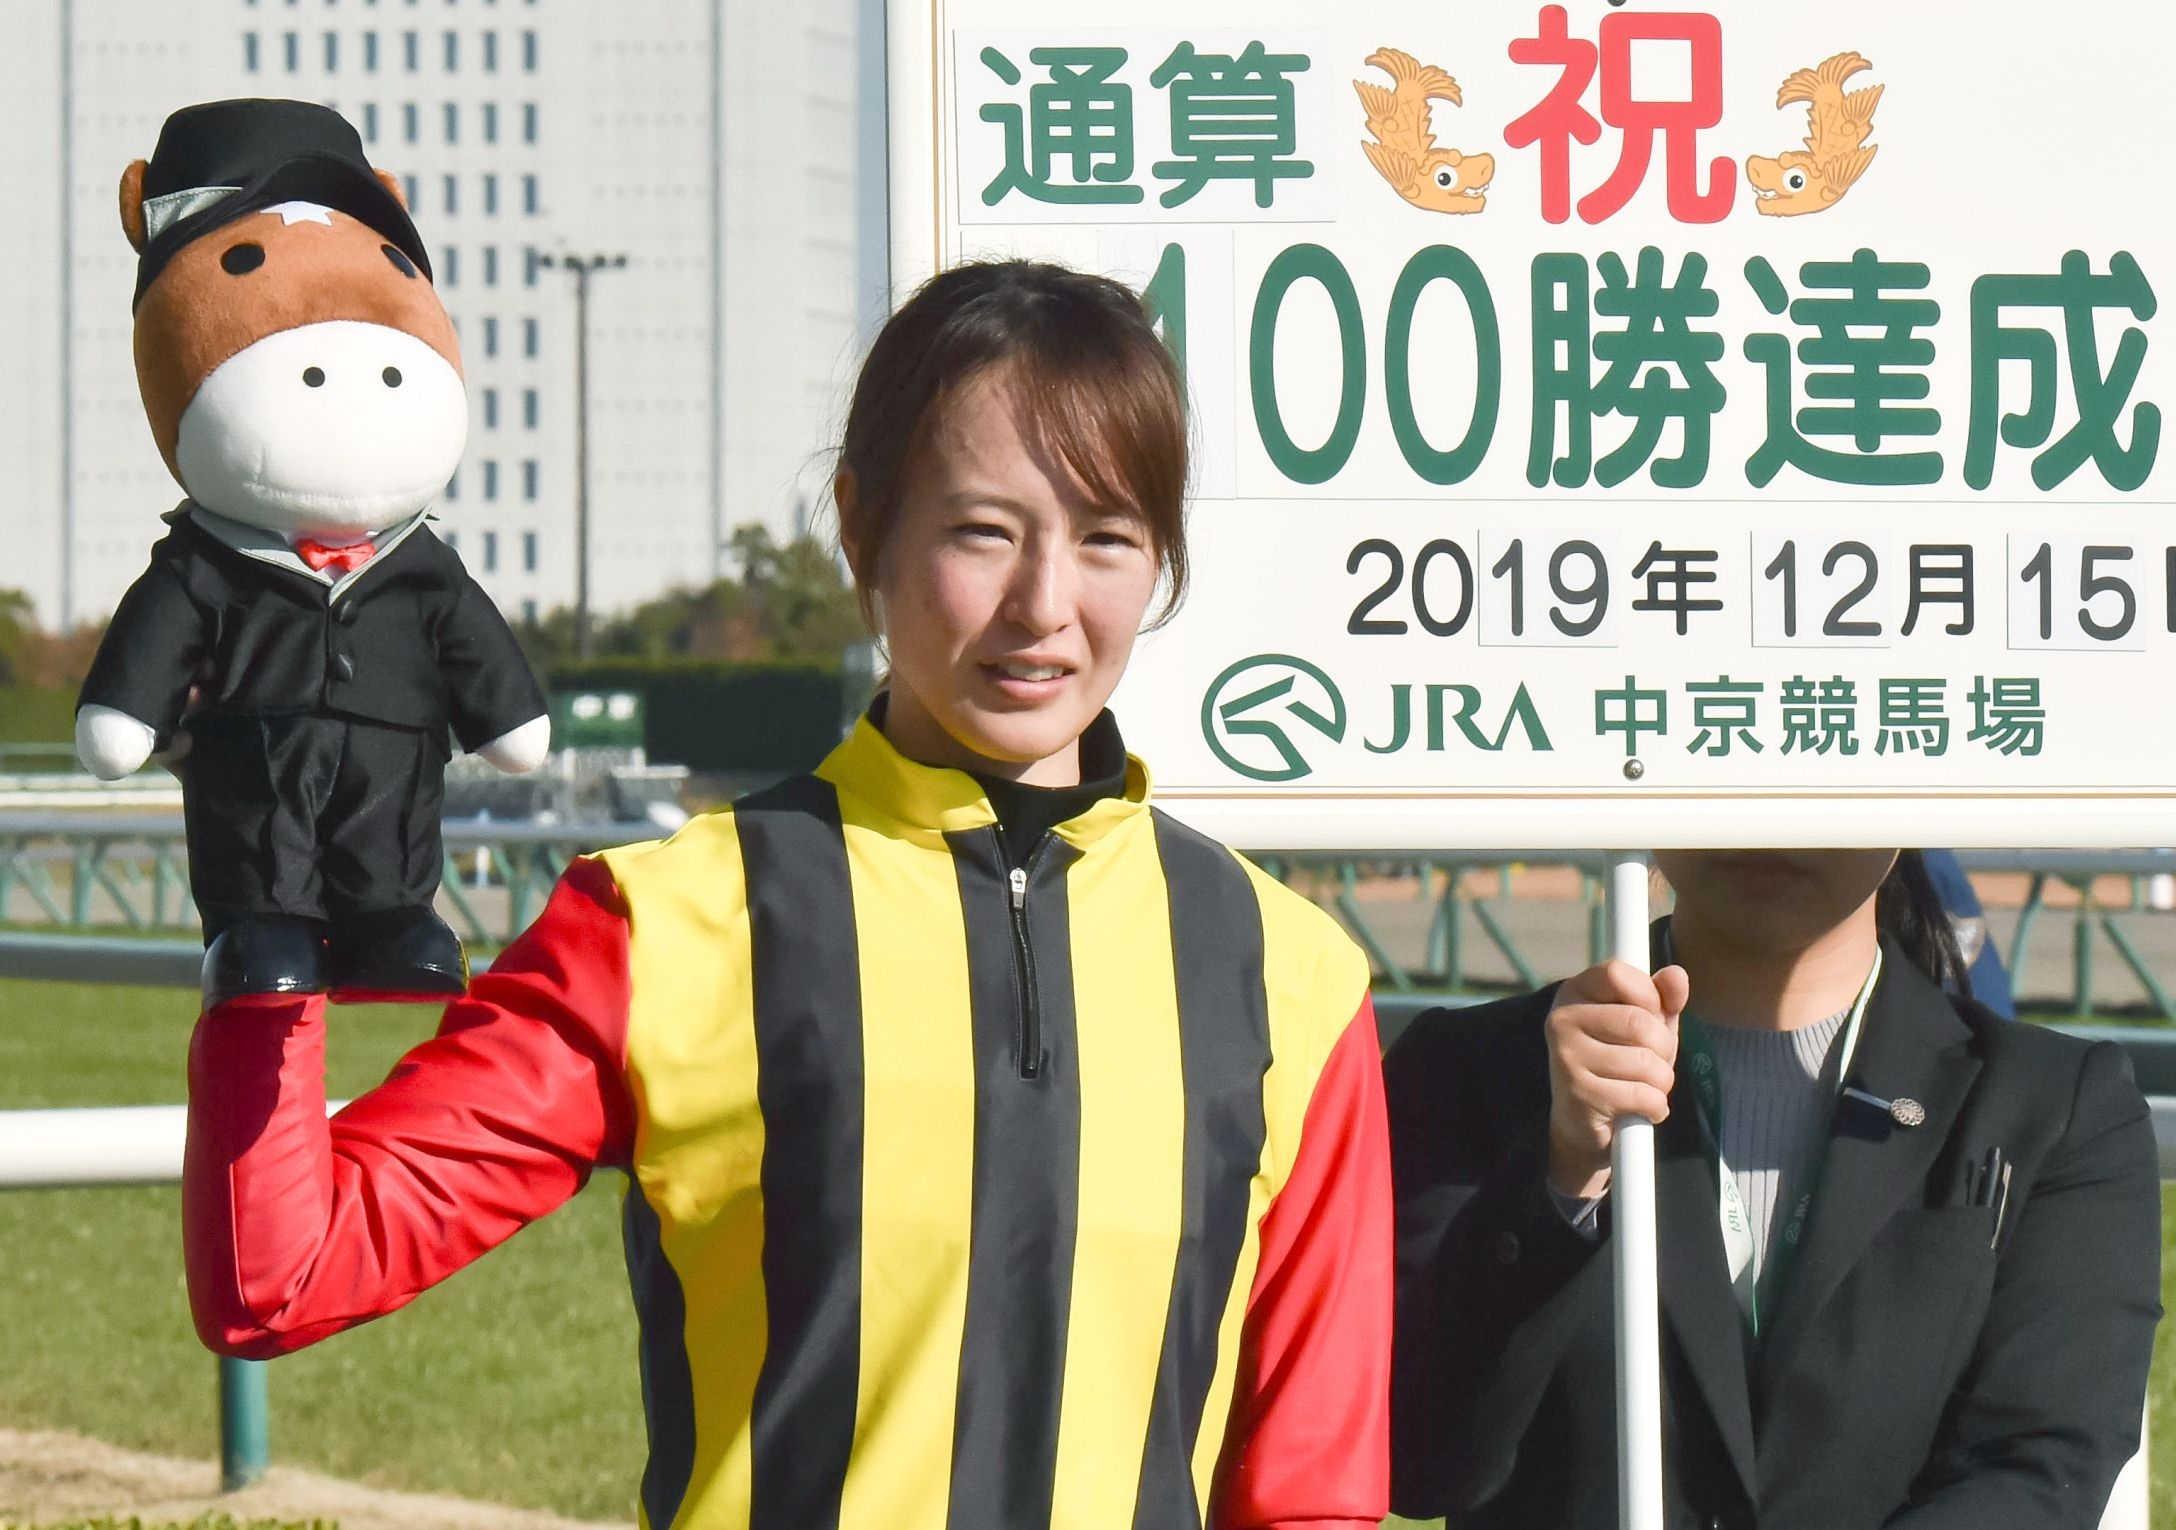 藤田菜七子、４年目の大躍進 女性騎手Ｗ杯優勝、初の重賞制覇、通算 